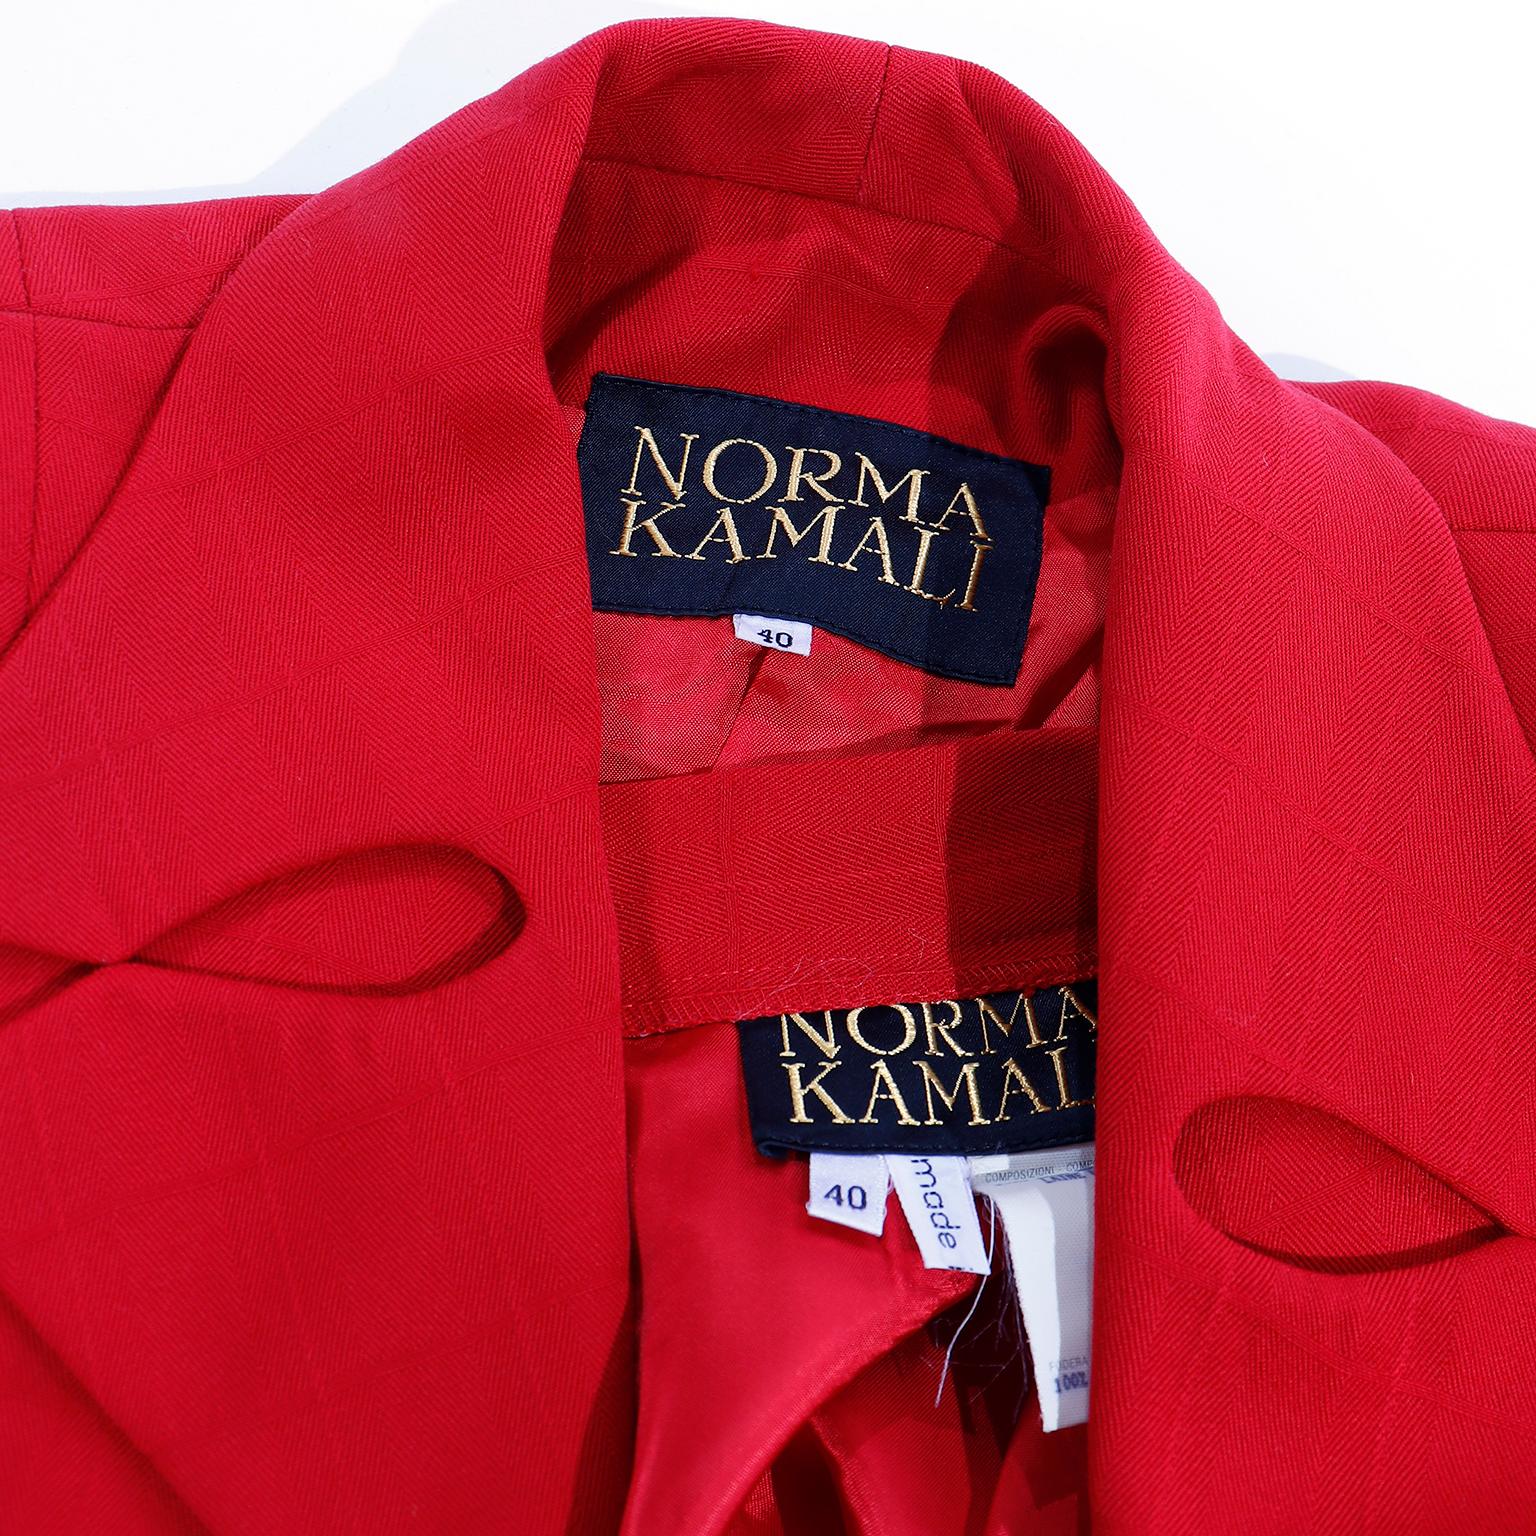 1988 Norma Kamali Windowpane Plaid Red Wool Suit w/ Lapel Cutouts 3